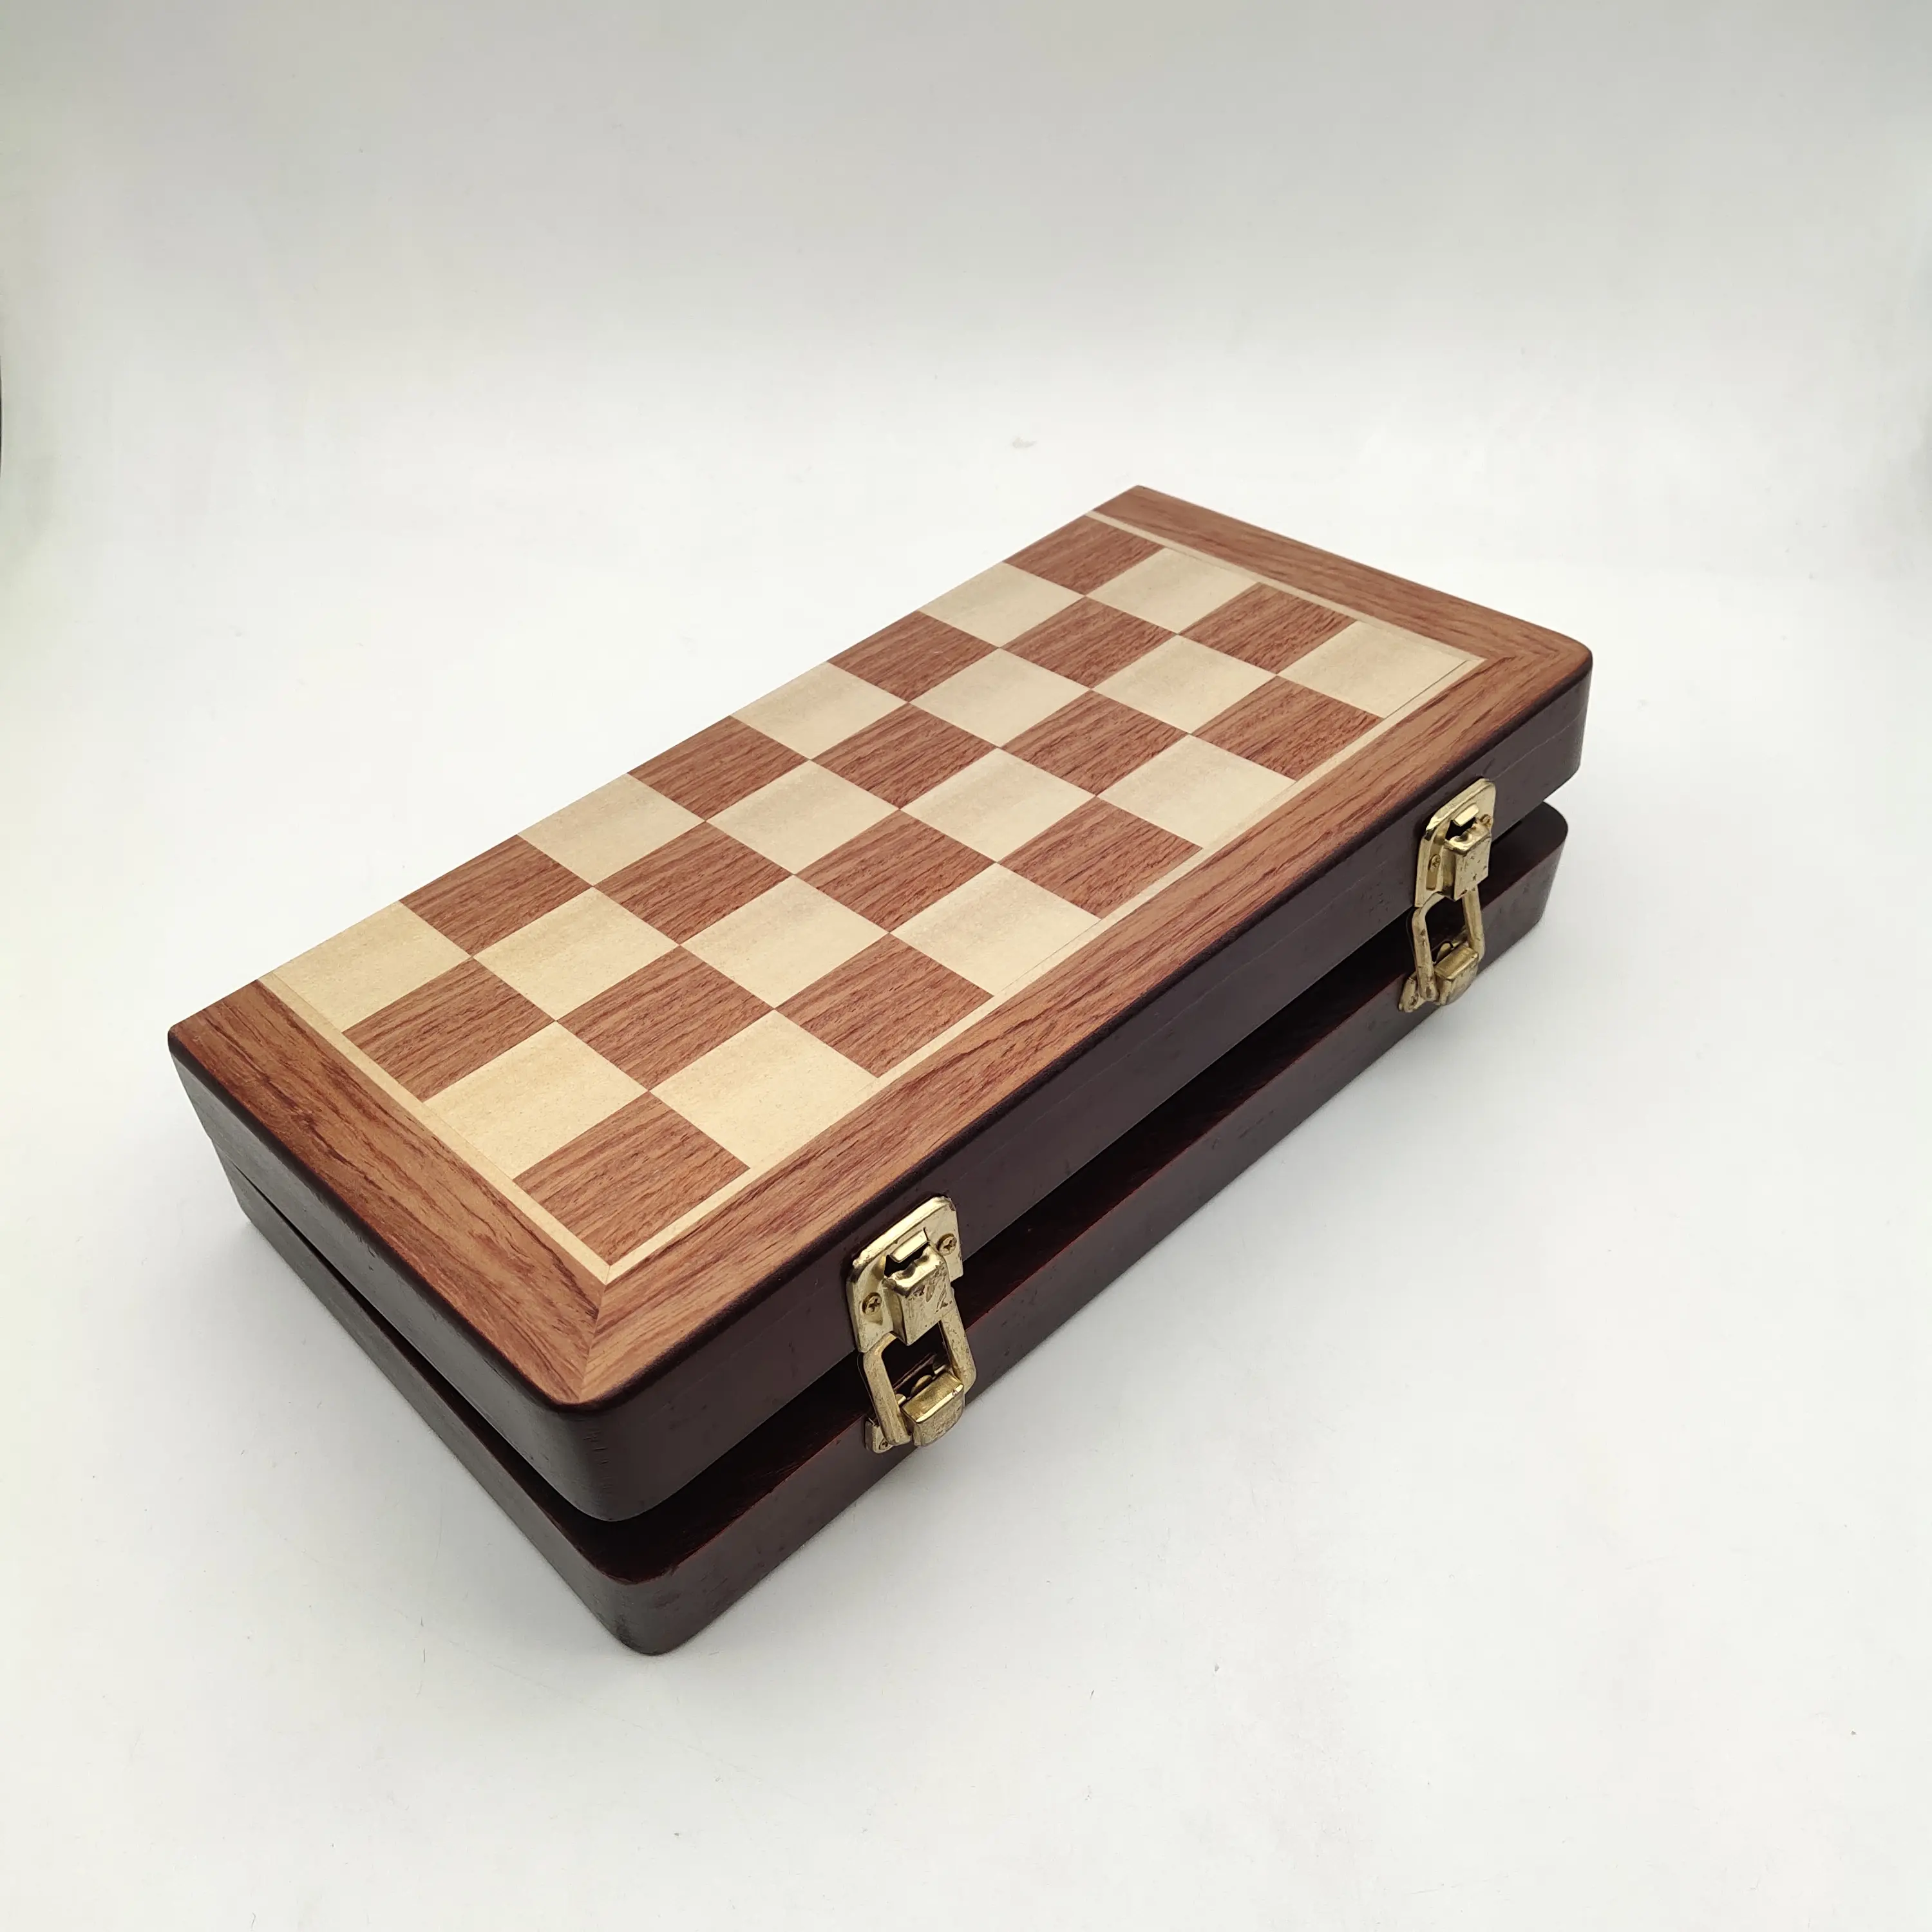 木製チェスピース中国チェスセットボード付き